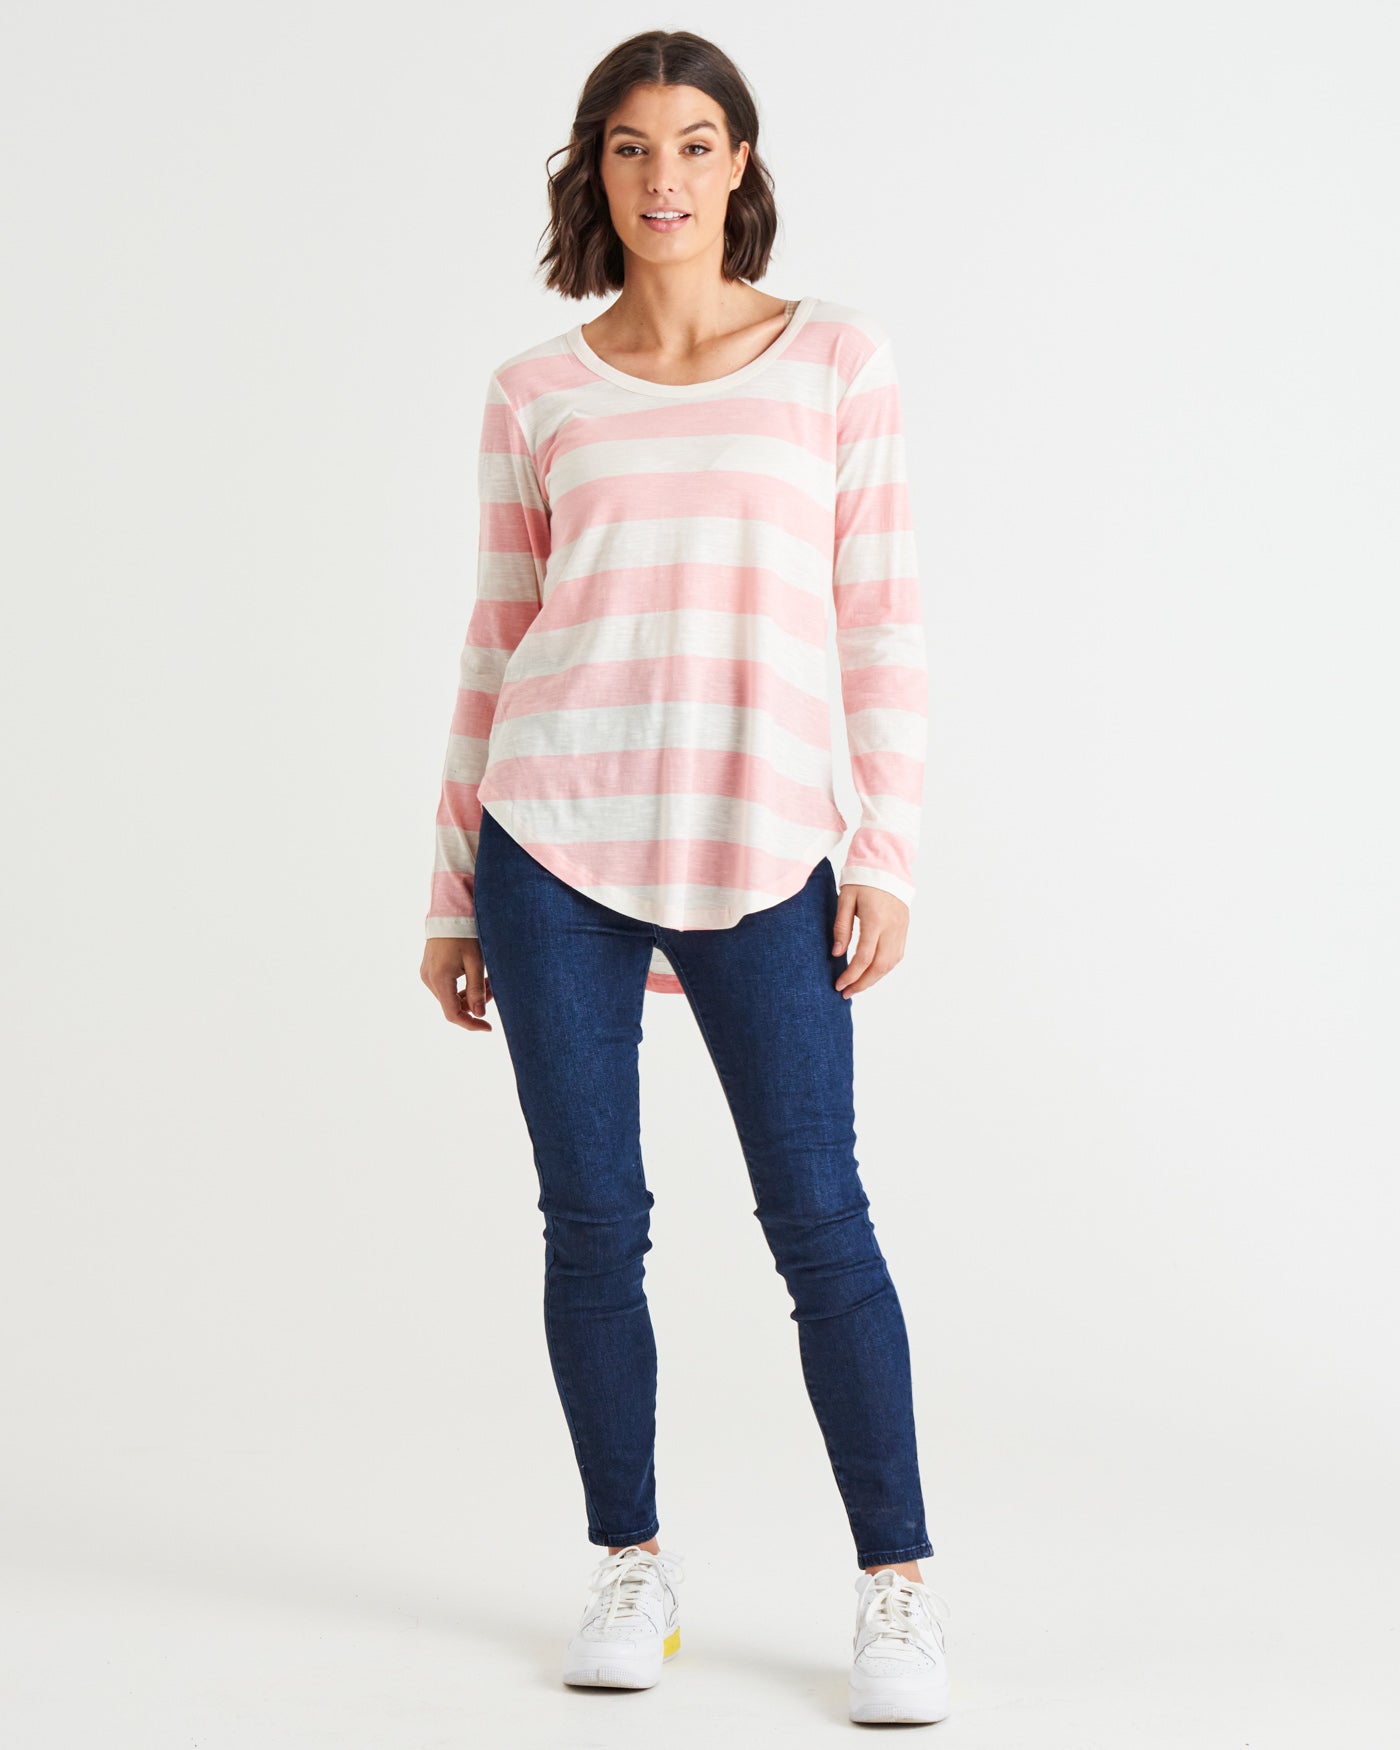 Megan Long Sleeve Cotton Basic Top - Baby Pink Stripe